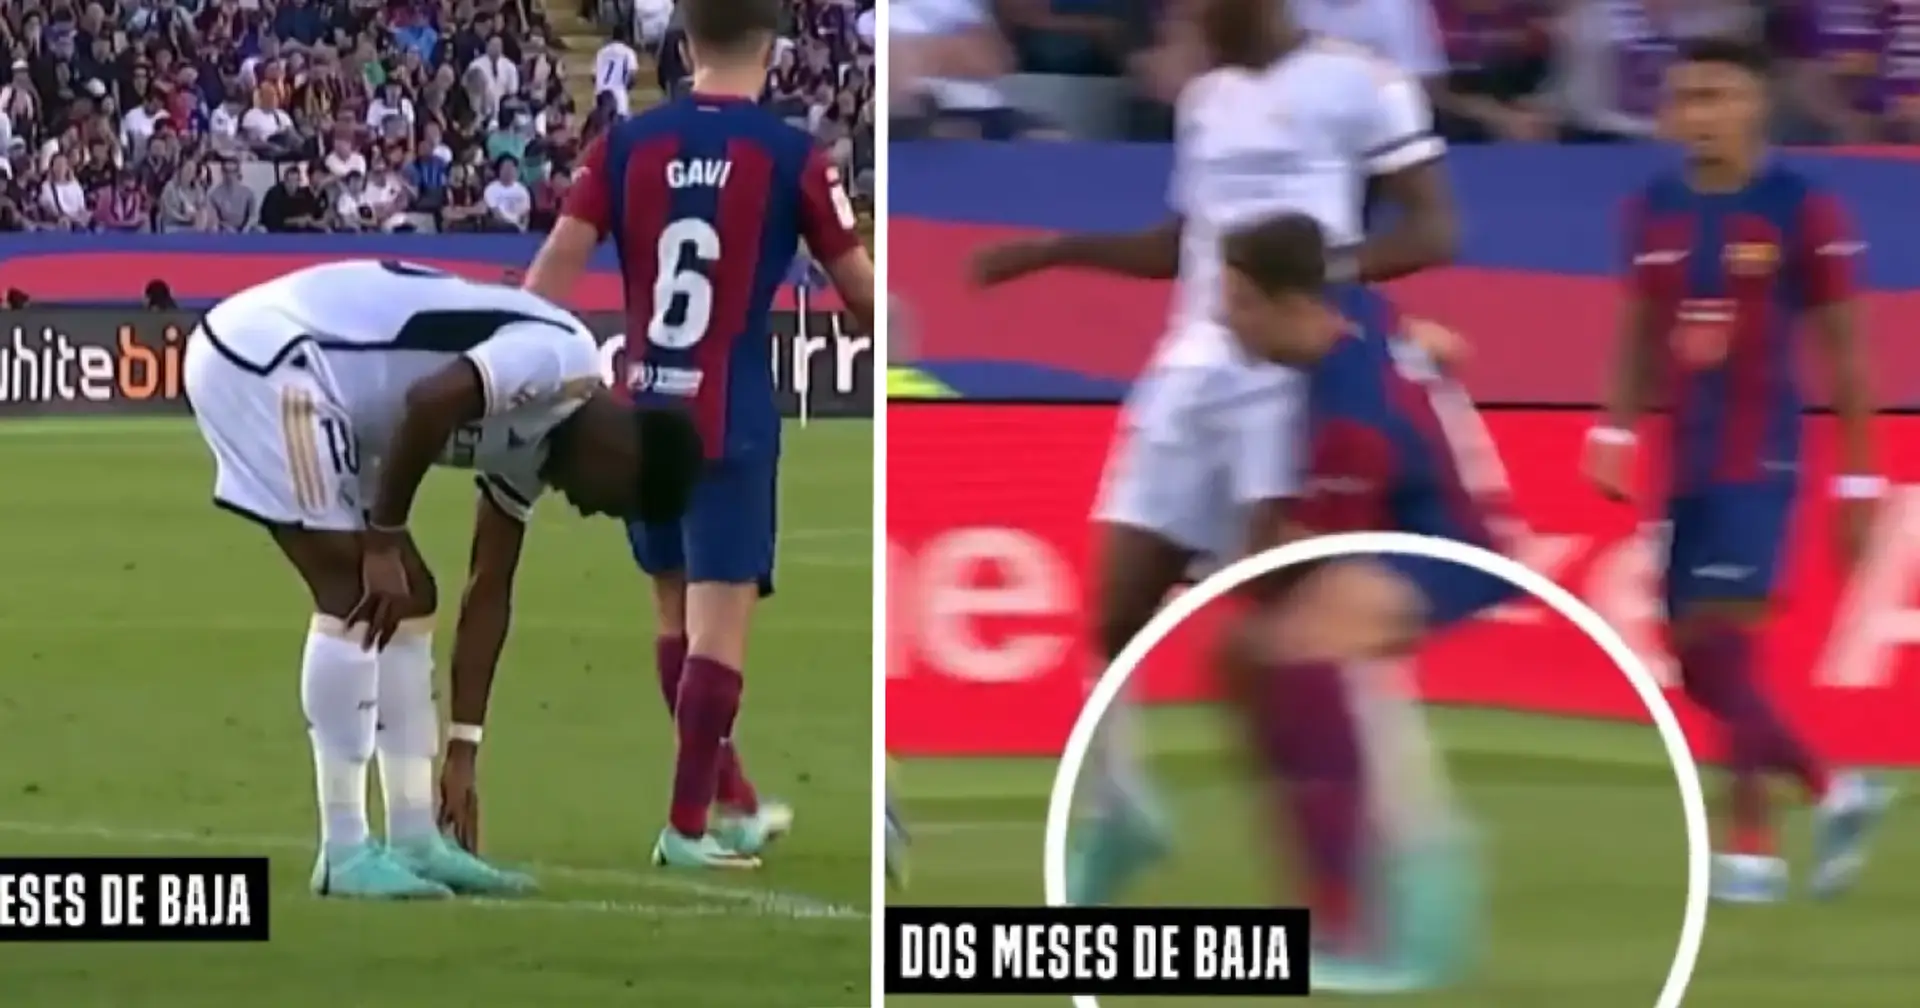 Visto: Un jugador del Barça causa grave lesión a Tchouameni en el Clásico, no recibe ni una tarjeta amarilla